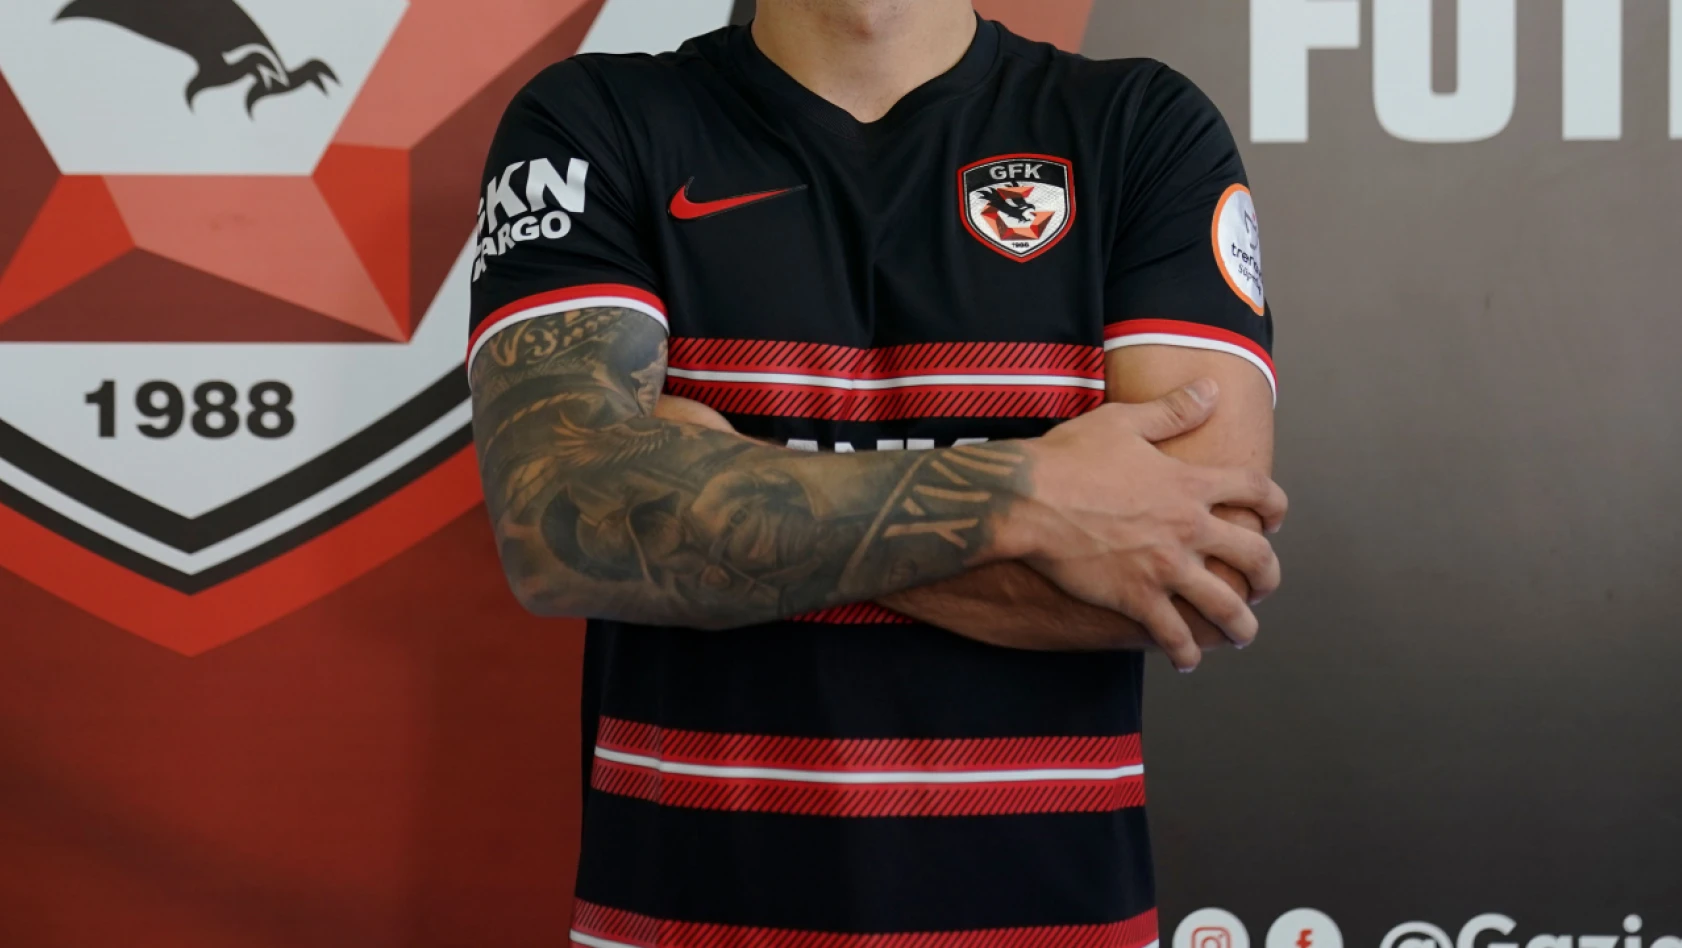 Kayseri'de de forma giymişti Gaziantep FK ile el sıkıştı - Kayserispor Haberleri